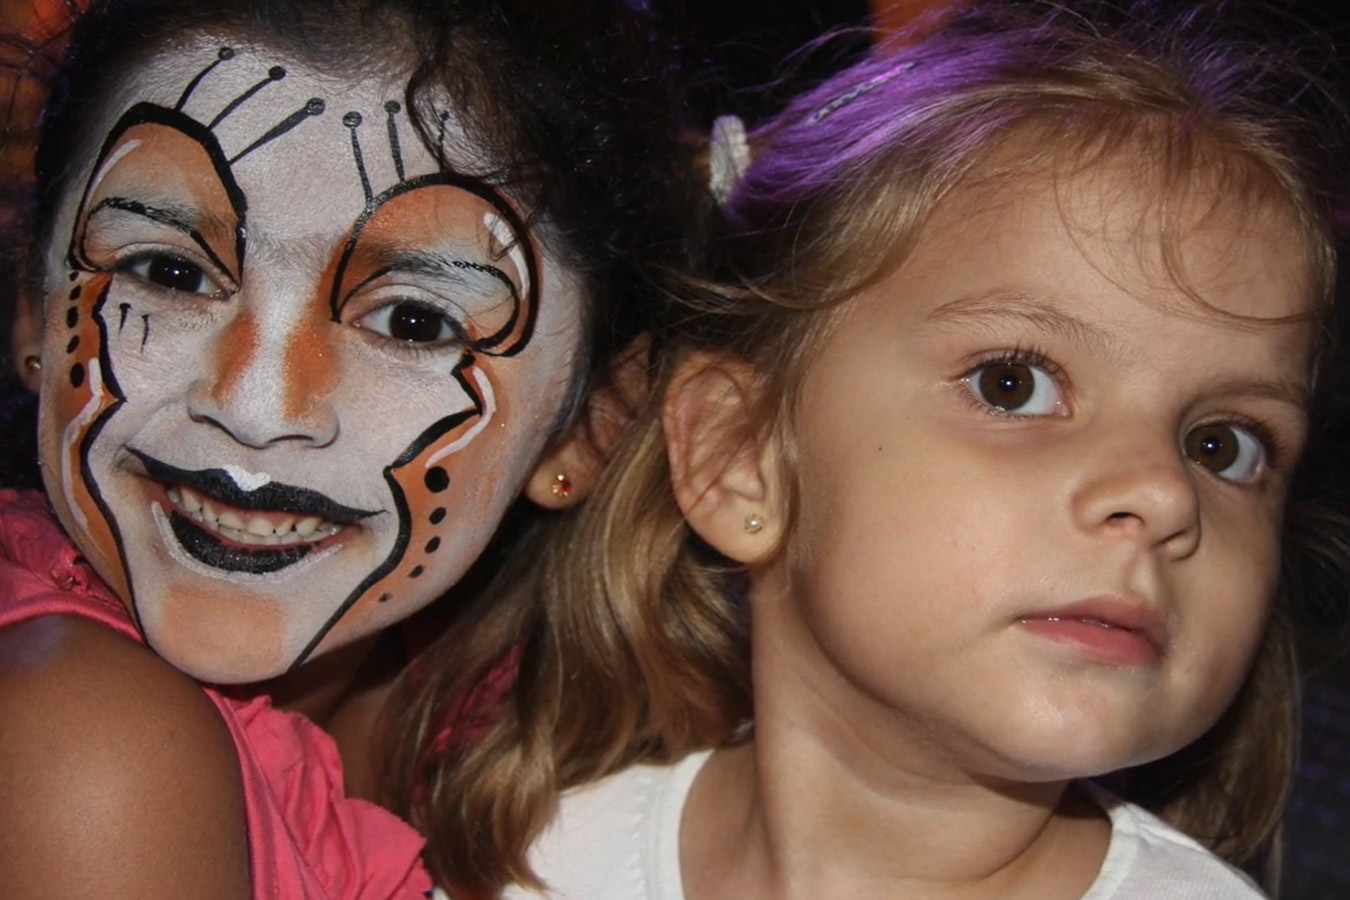 Uruguay: Murga, Karneval in Montevideo